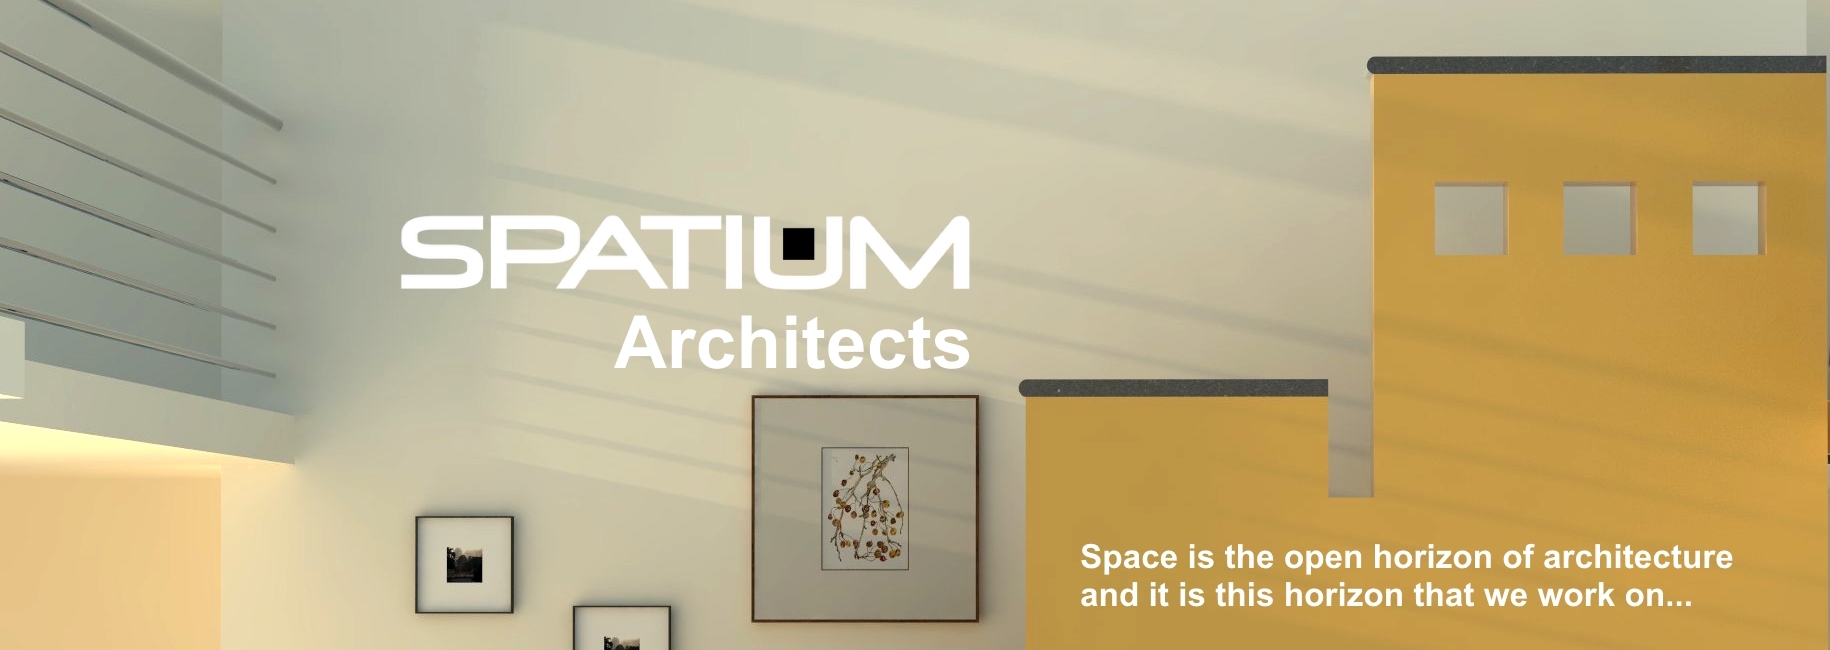 Spatium Architects